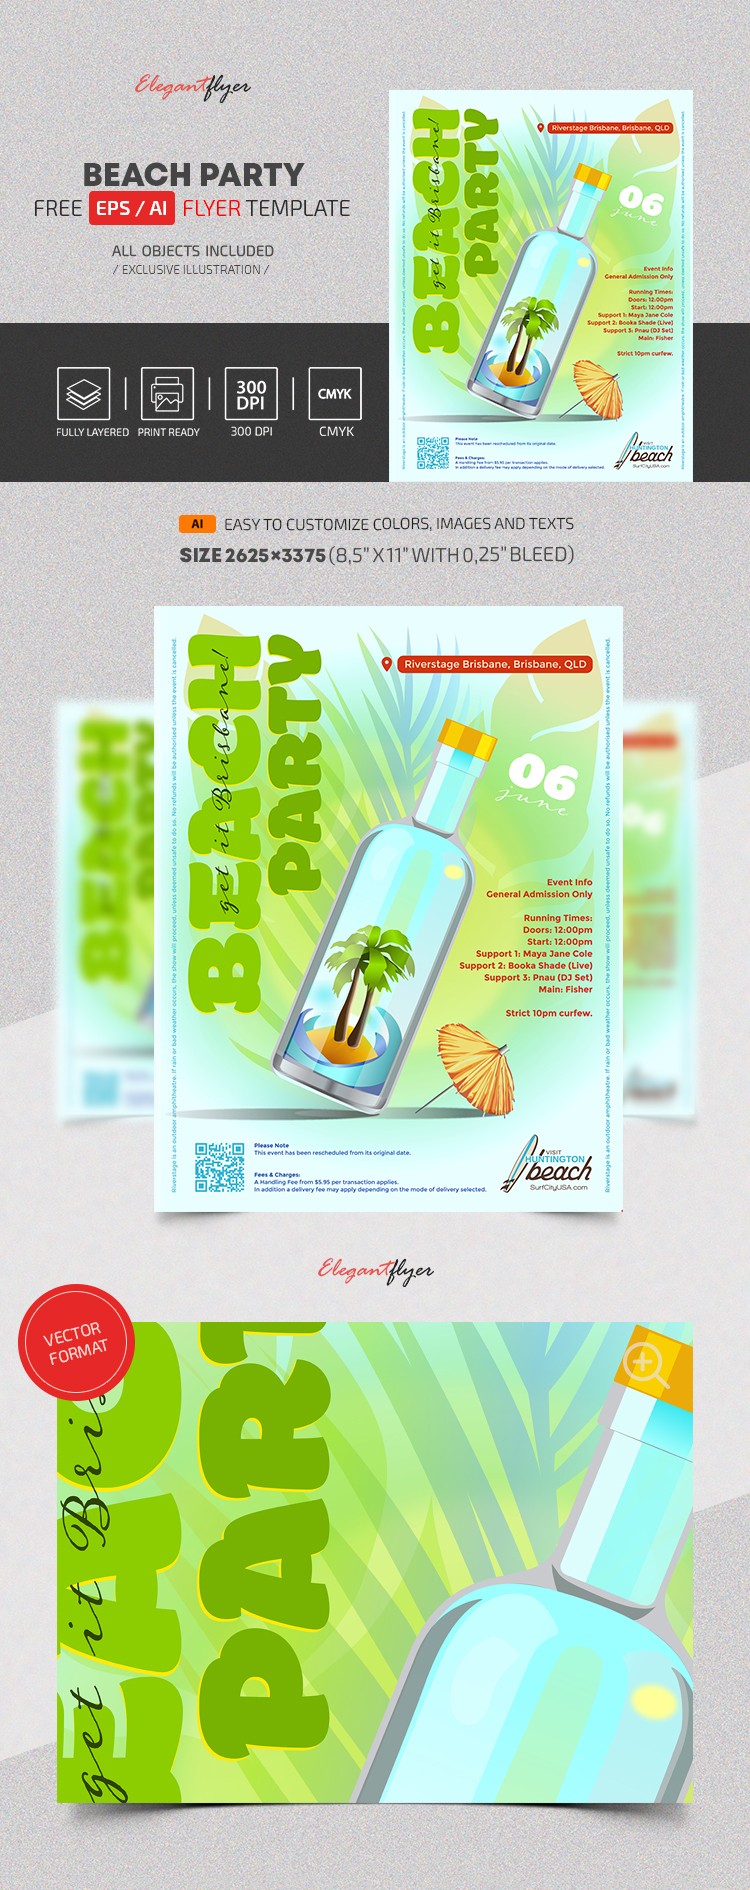 Beach Party Vector Flyer by ElegantFlyer